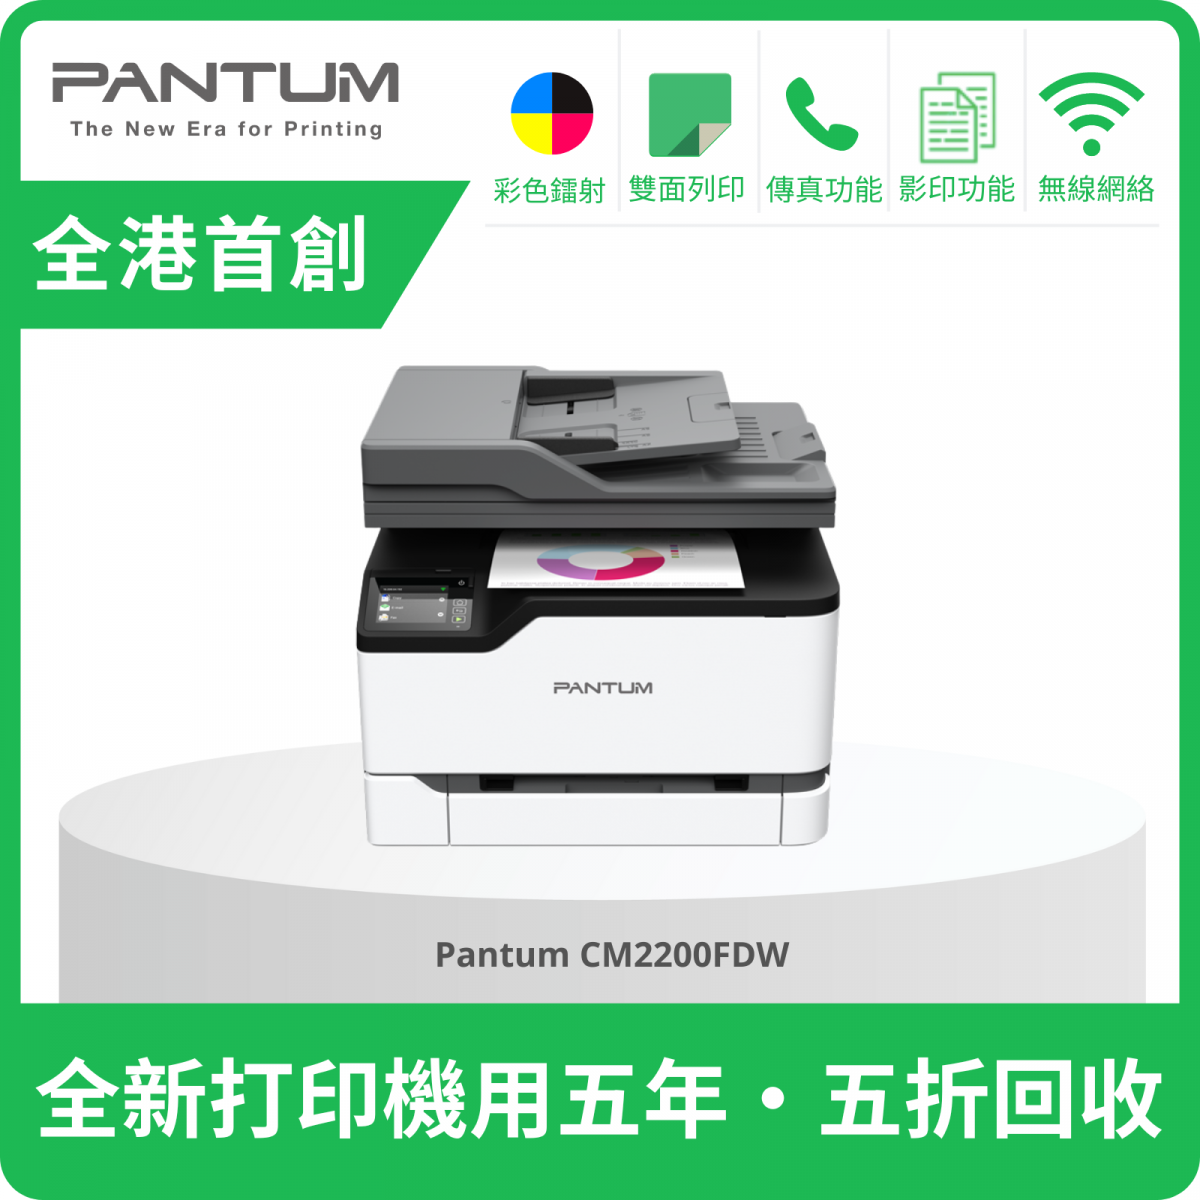 CM2200FDW 4in1 Color Laser Printer  #DCPL3551CDW #MFCL3750CDW #C2410SD #M183fw #M283fdn